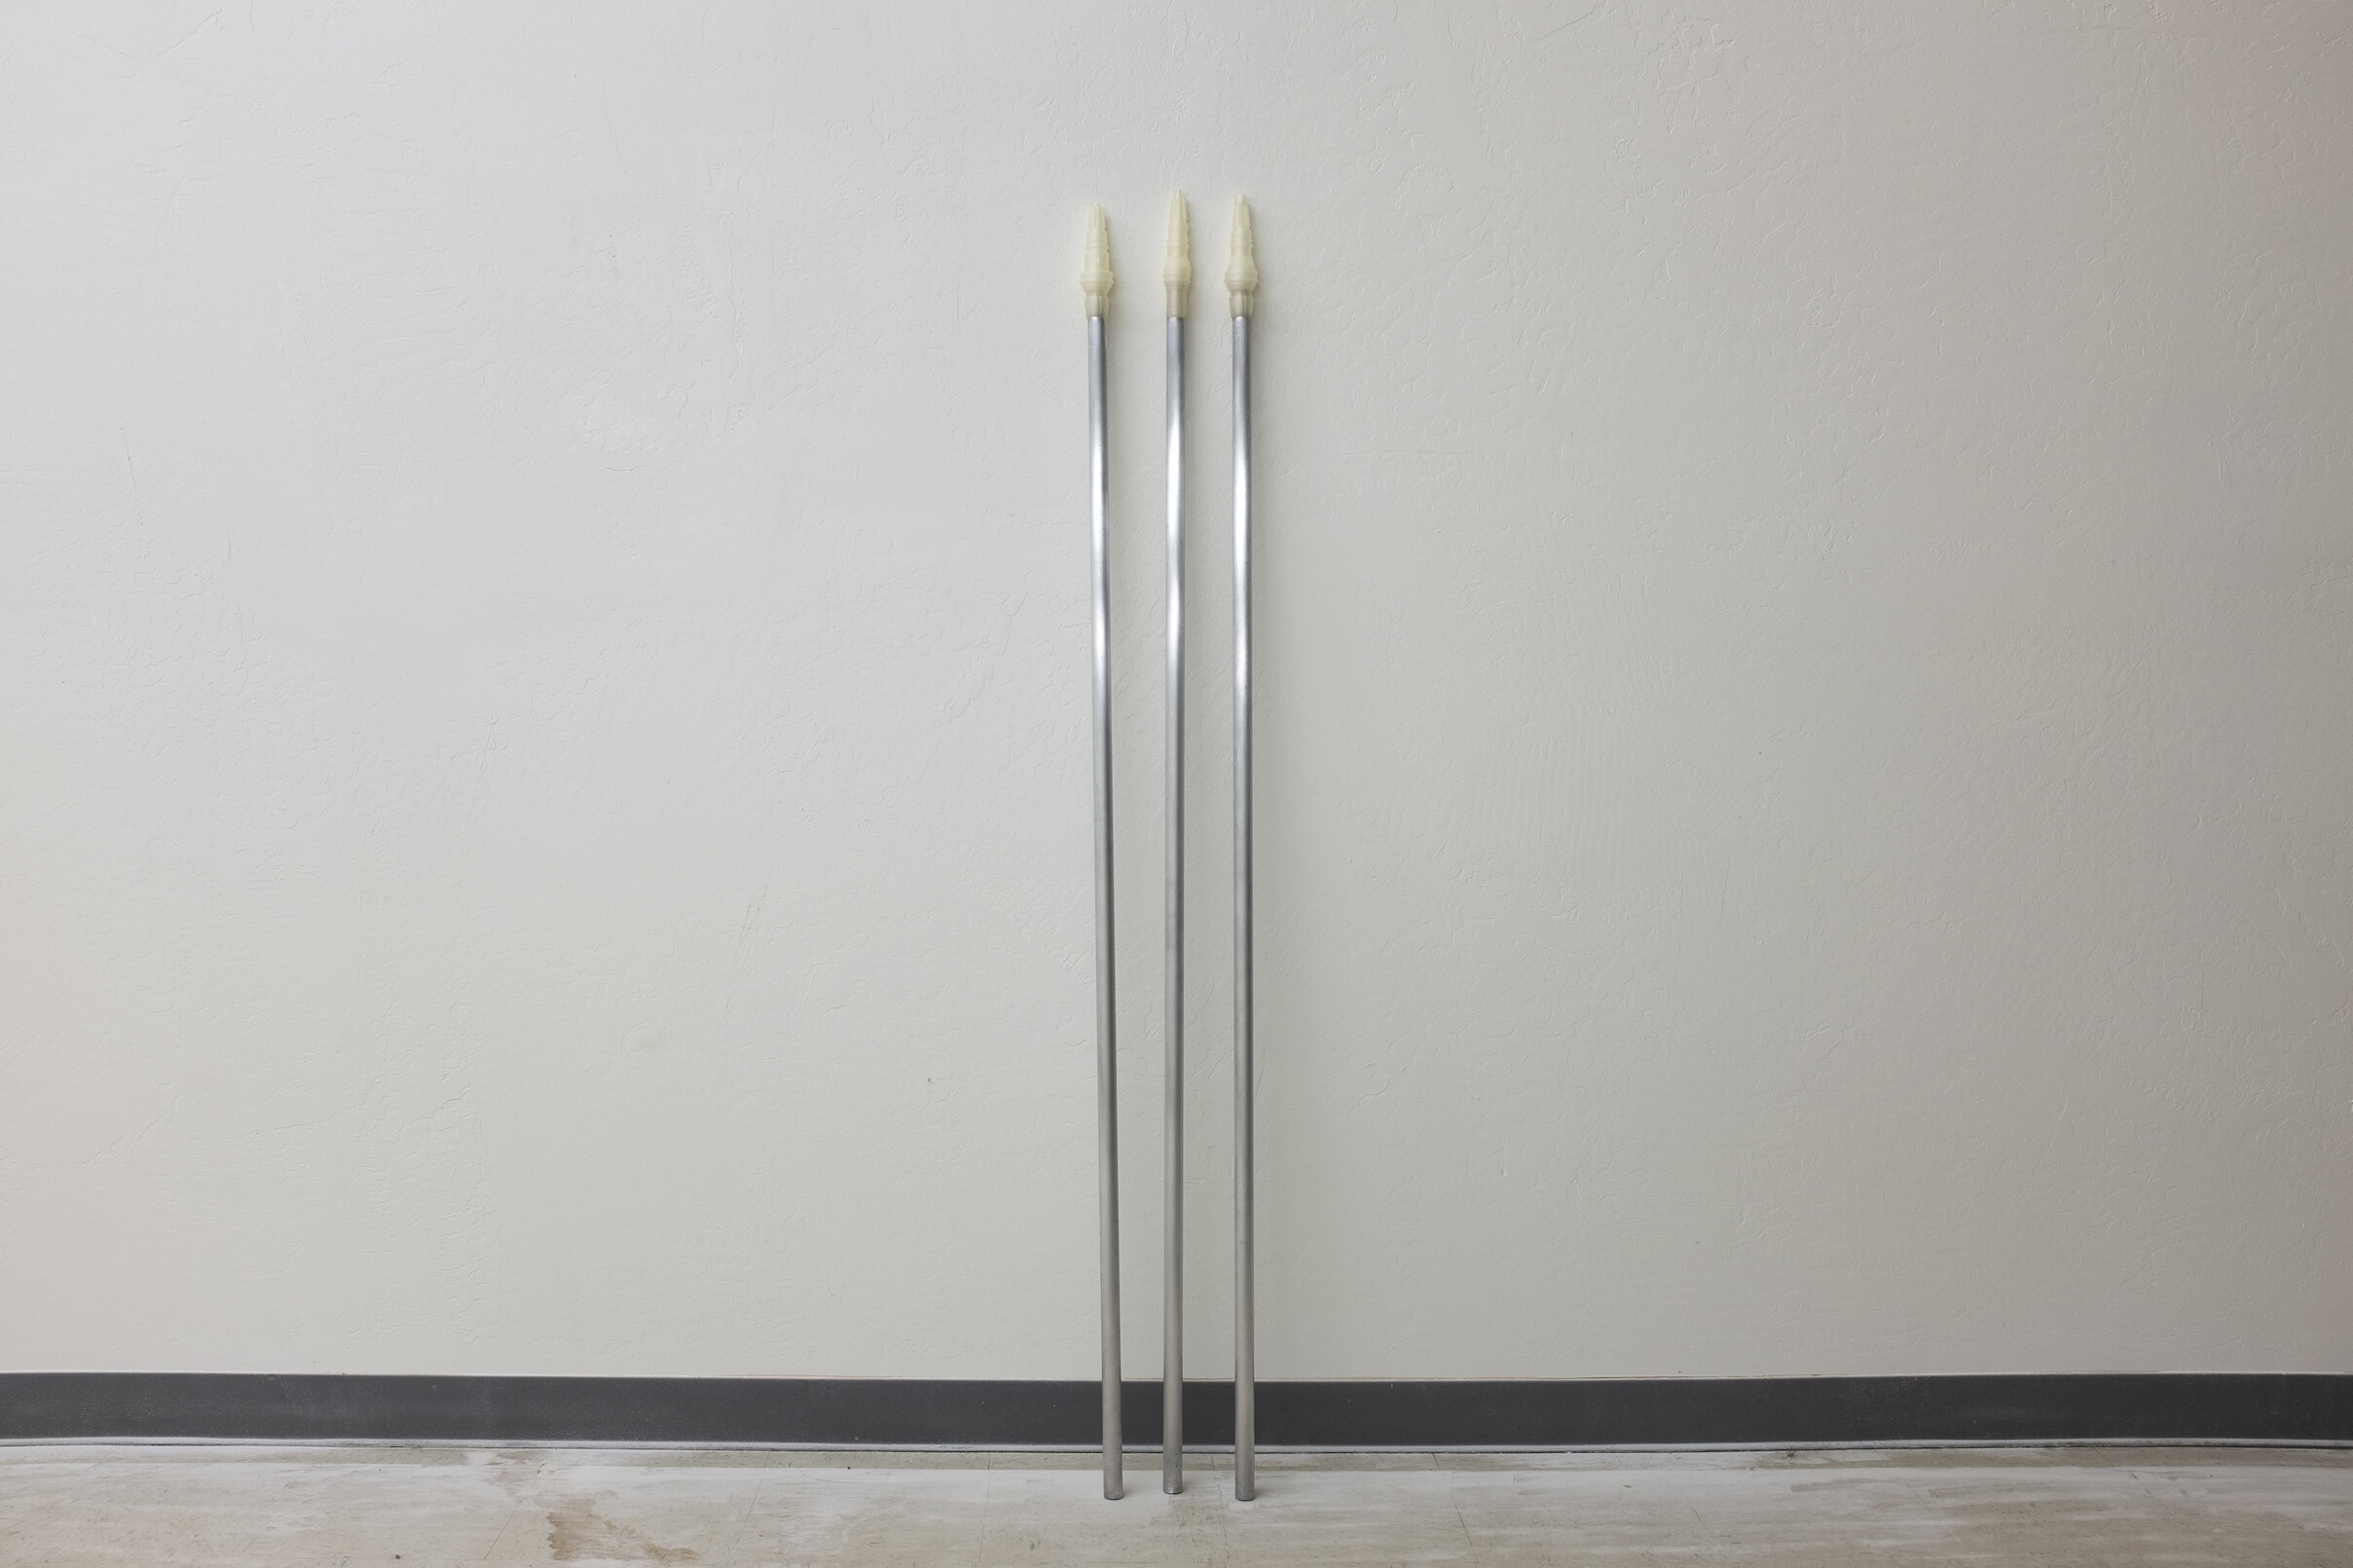   Staff Trio , 2020. Aluminum, PLA filament. 5 ft. ea. 